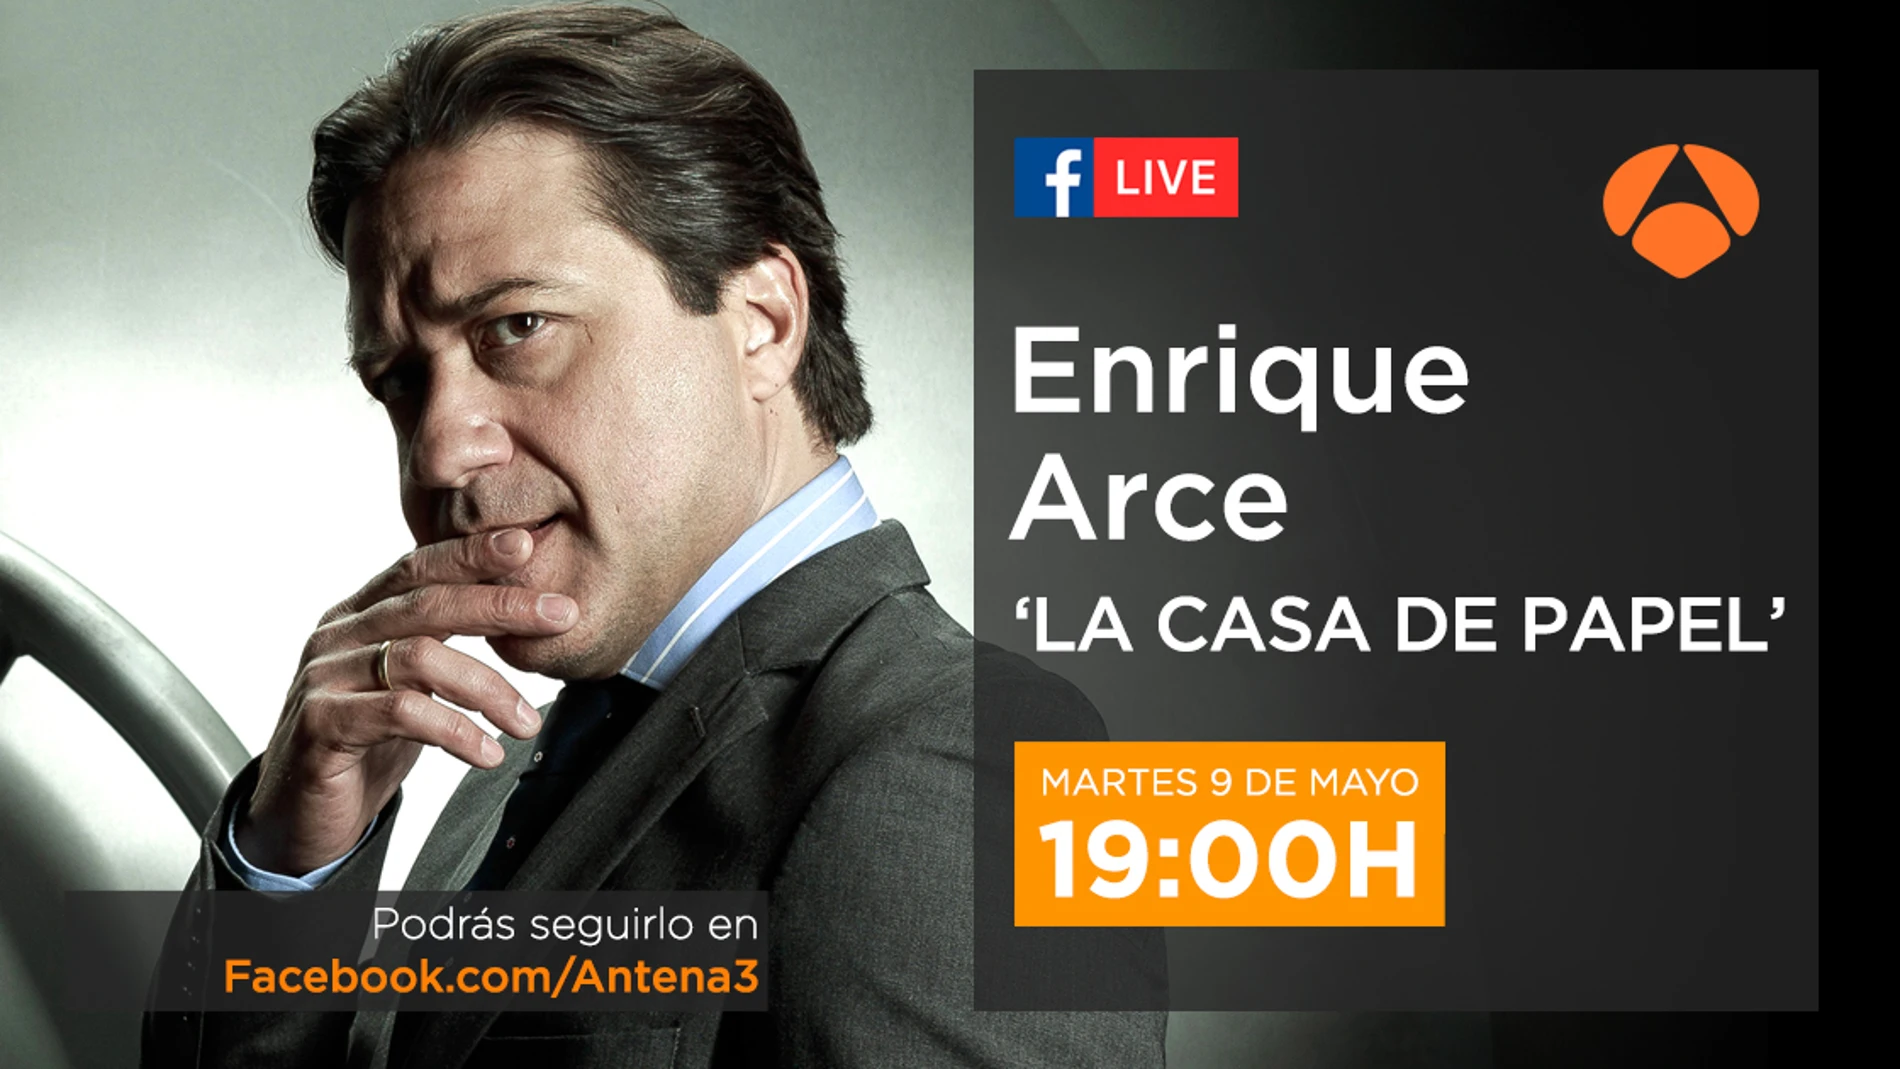 Enrique Arce estará en directo en Facebook Live